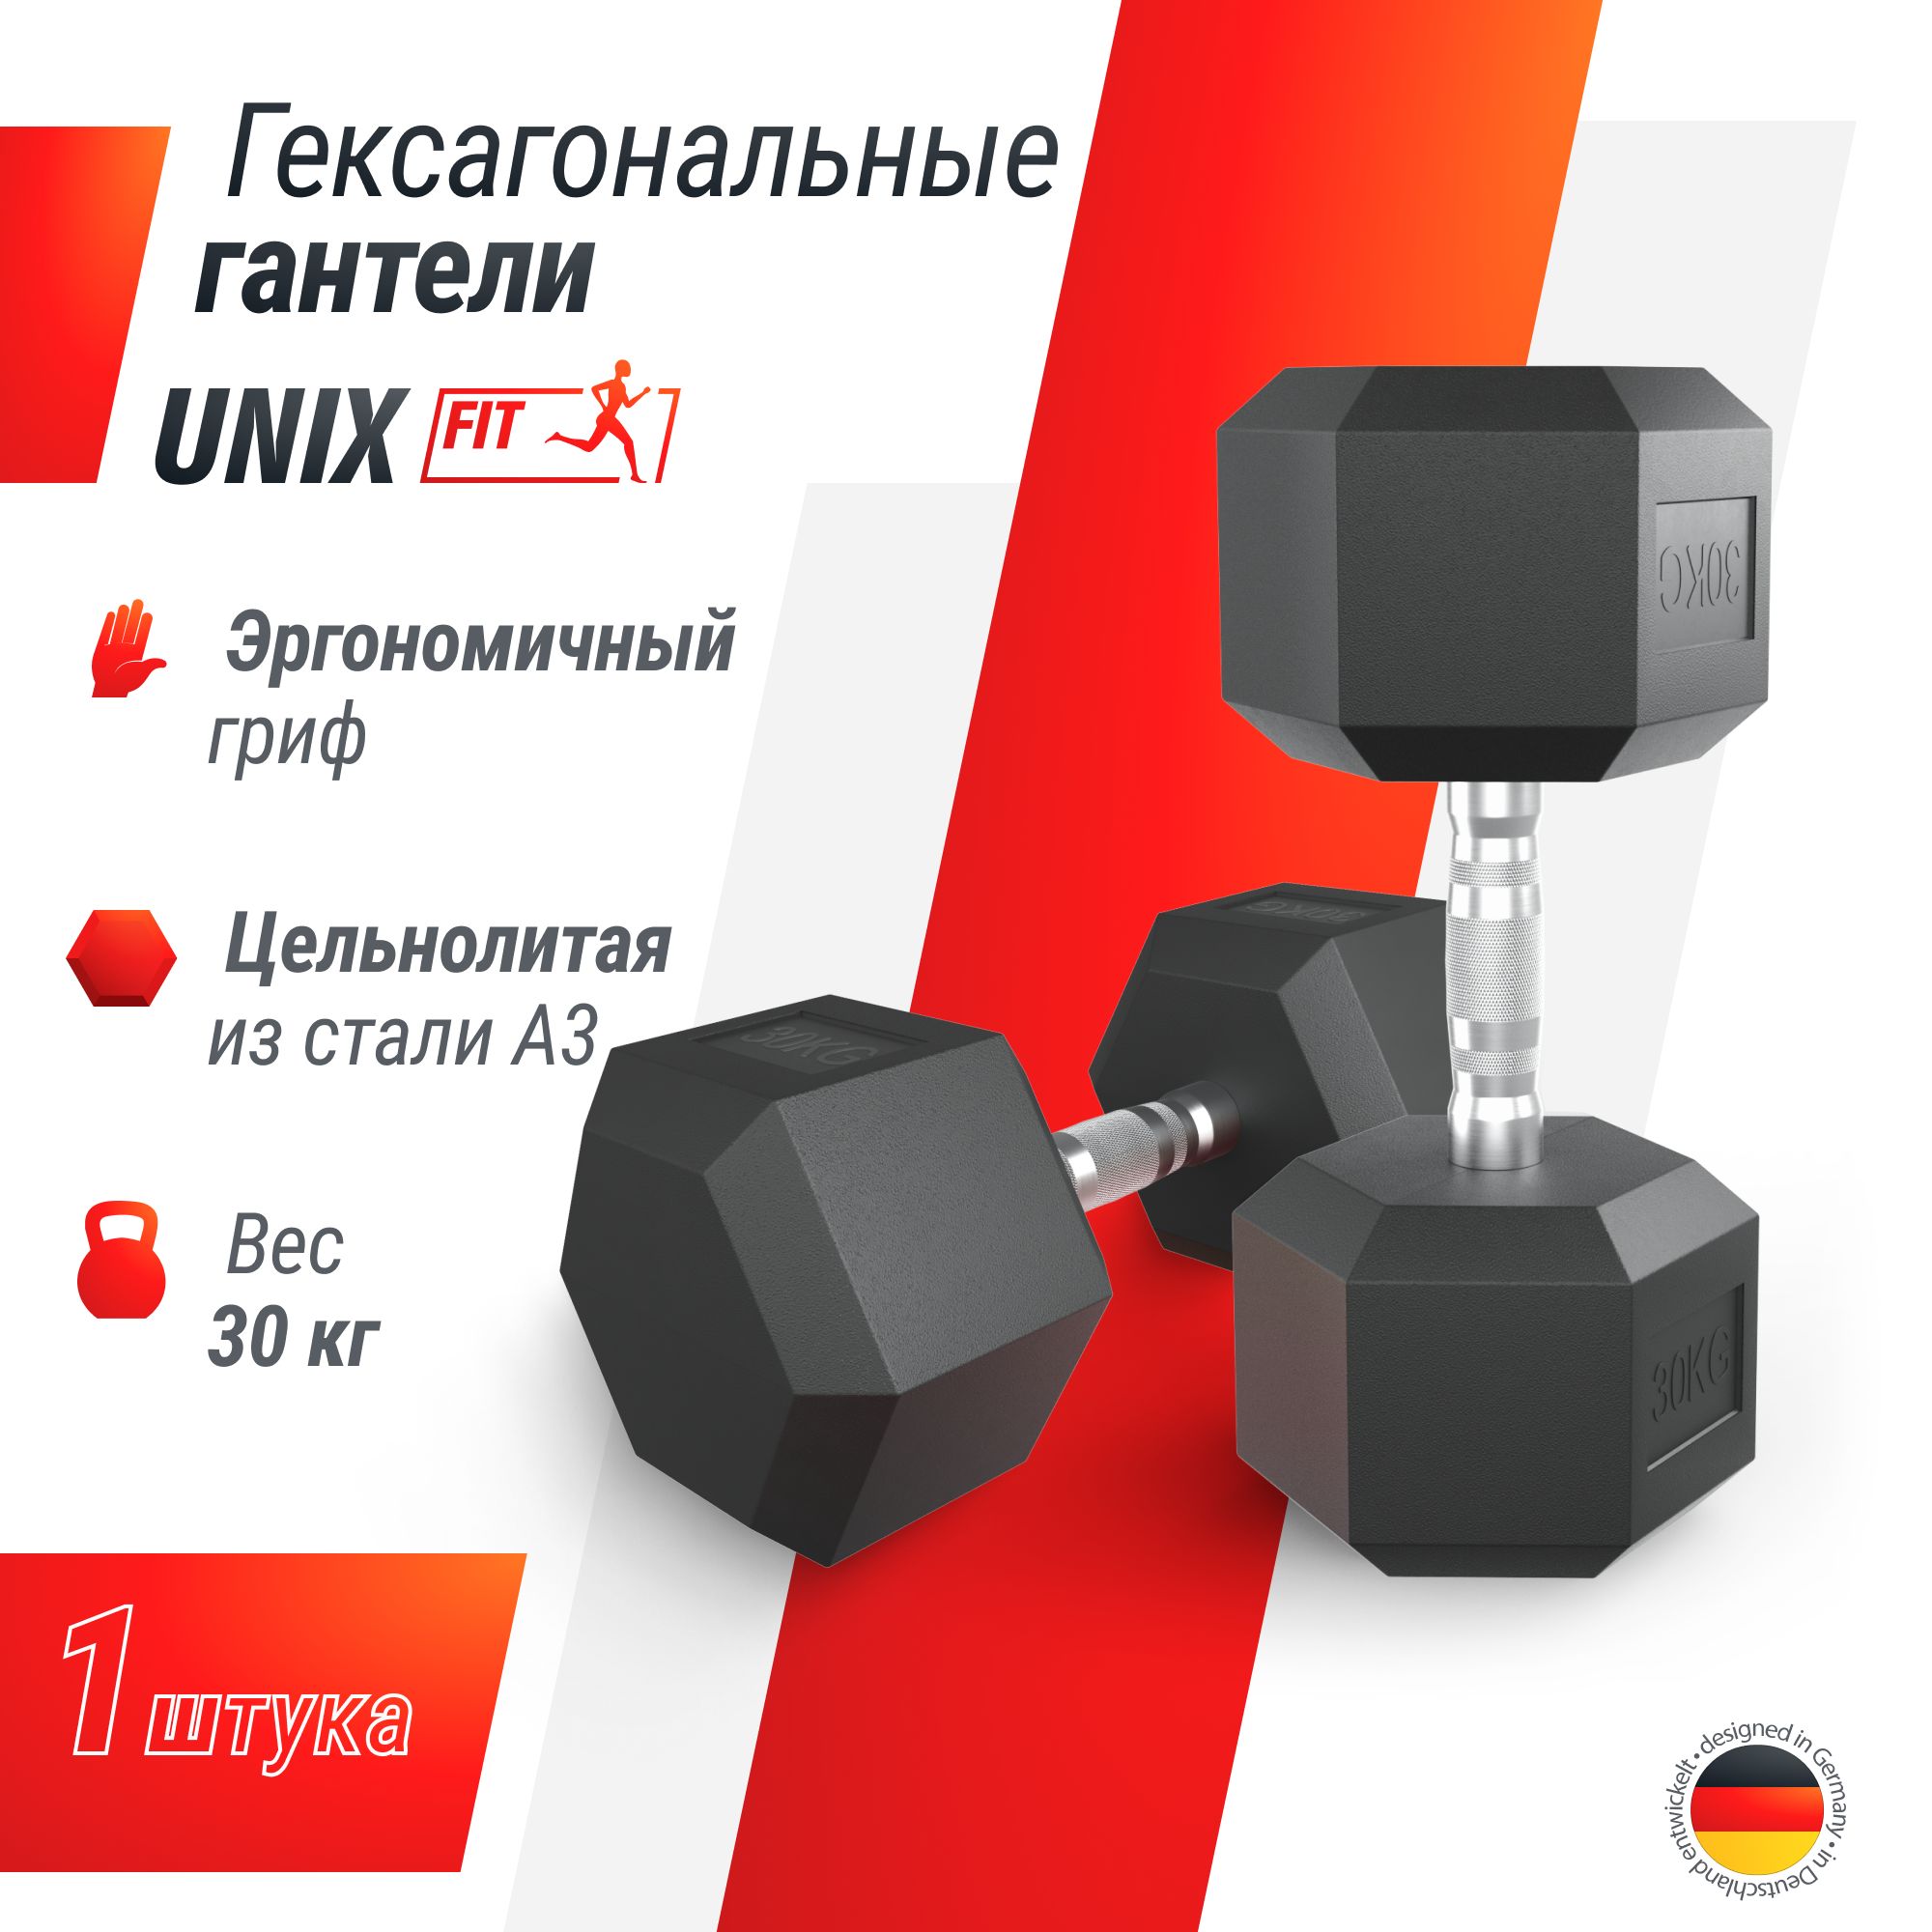 Гантель гексагональная UNIX Fit обрезиненная 30 кг, прорезиненная спортивная гантель